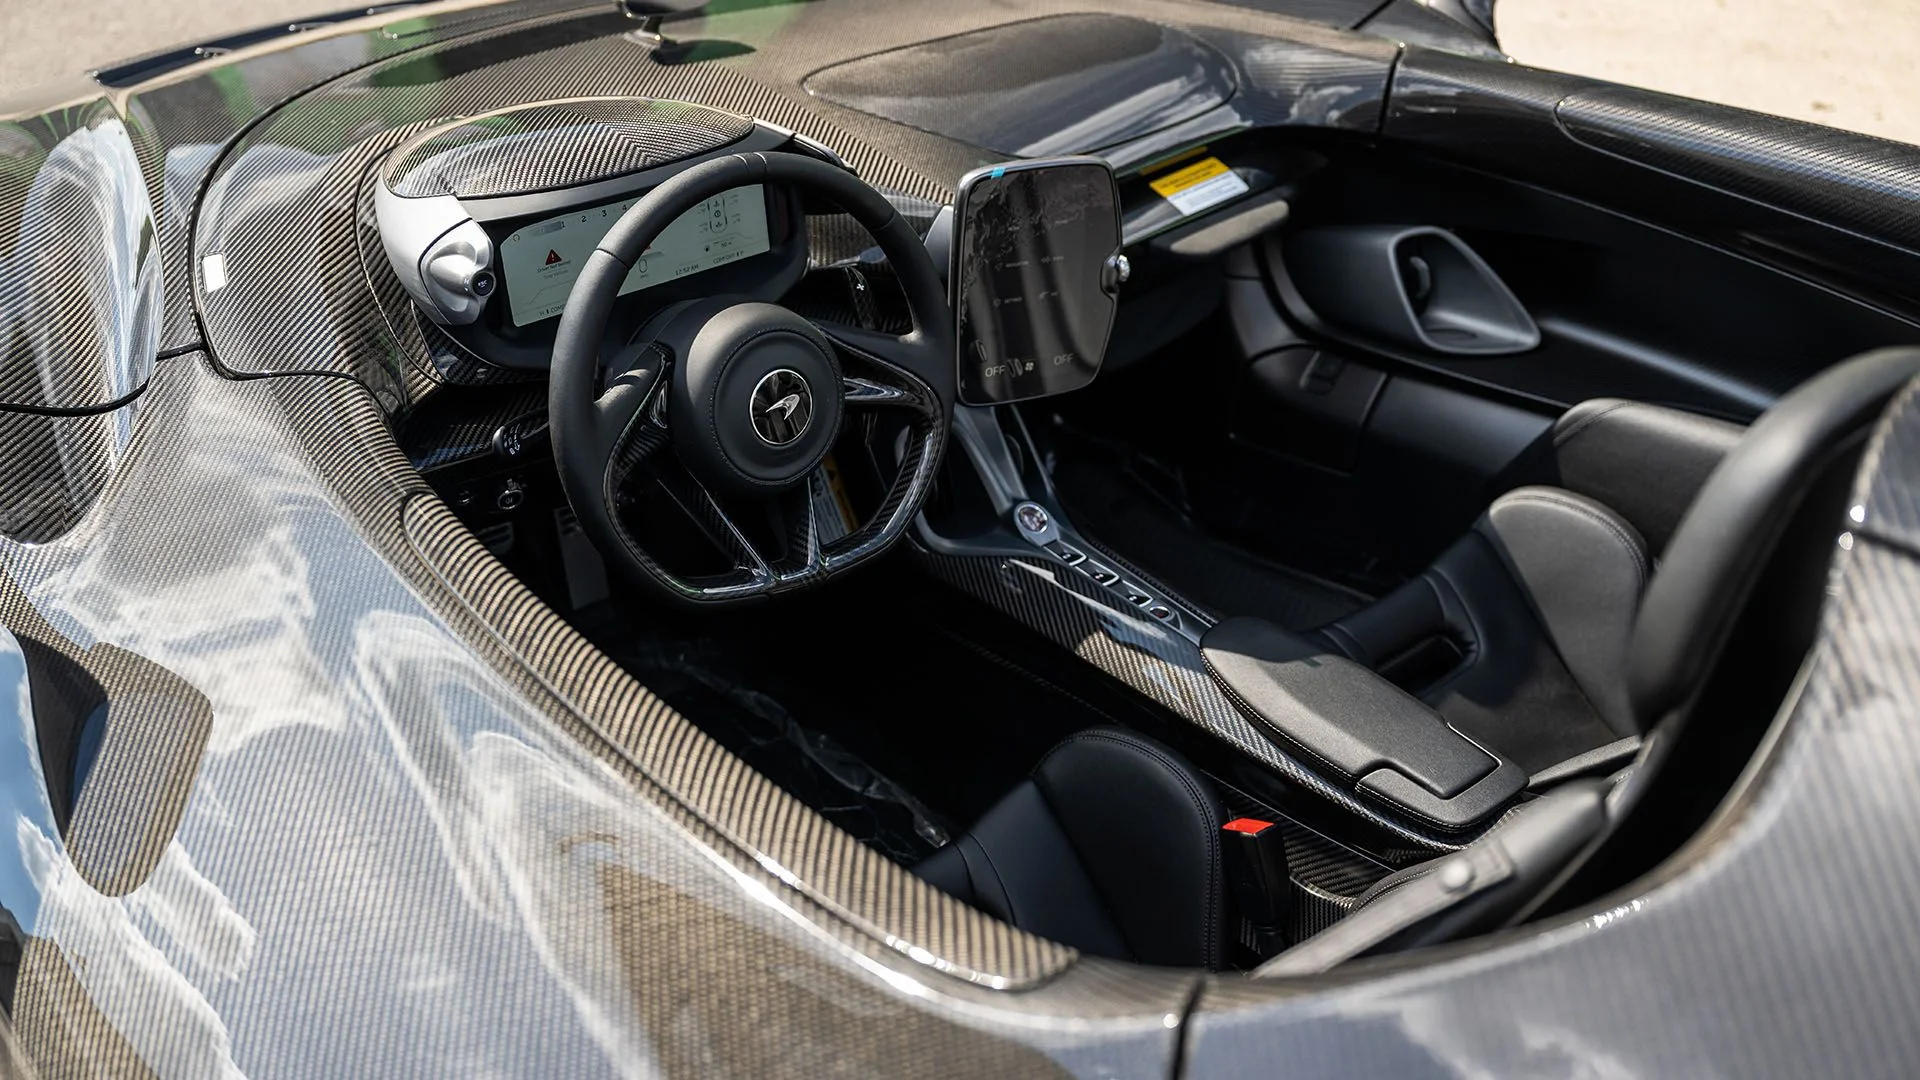 Interior view of a 2021 McLaren Elva